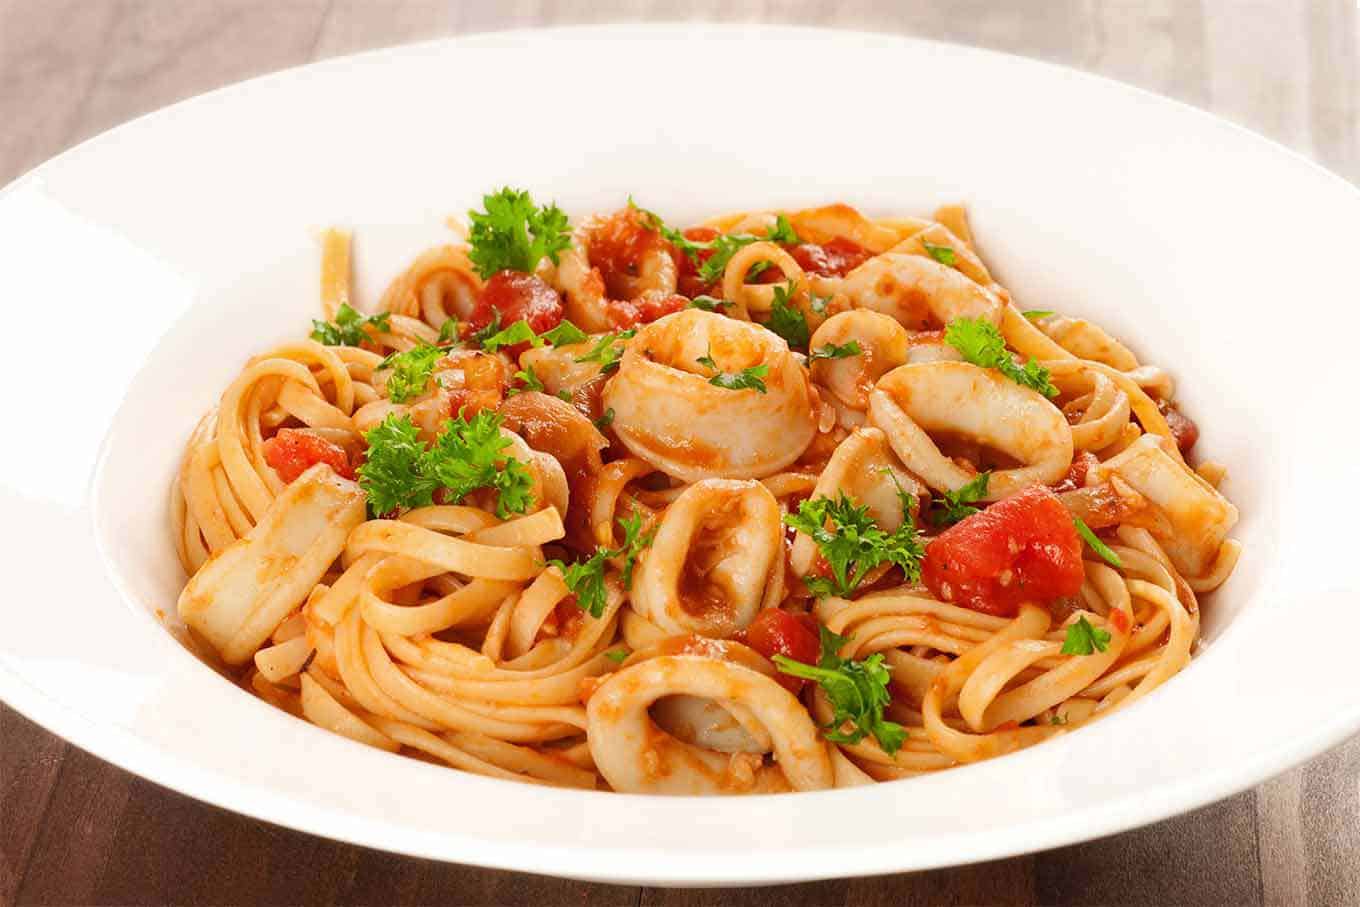 Tintenfisch Rezept Spaghetti mit Meeresfrüchten Tomatensauce Basilikum Sommergerichte leicht